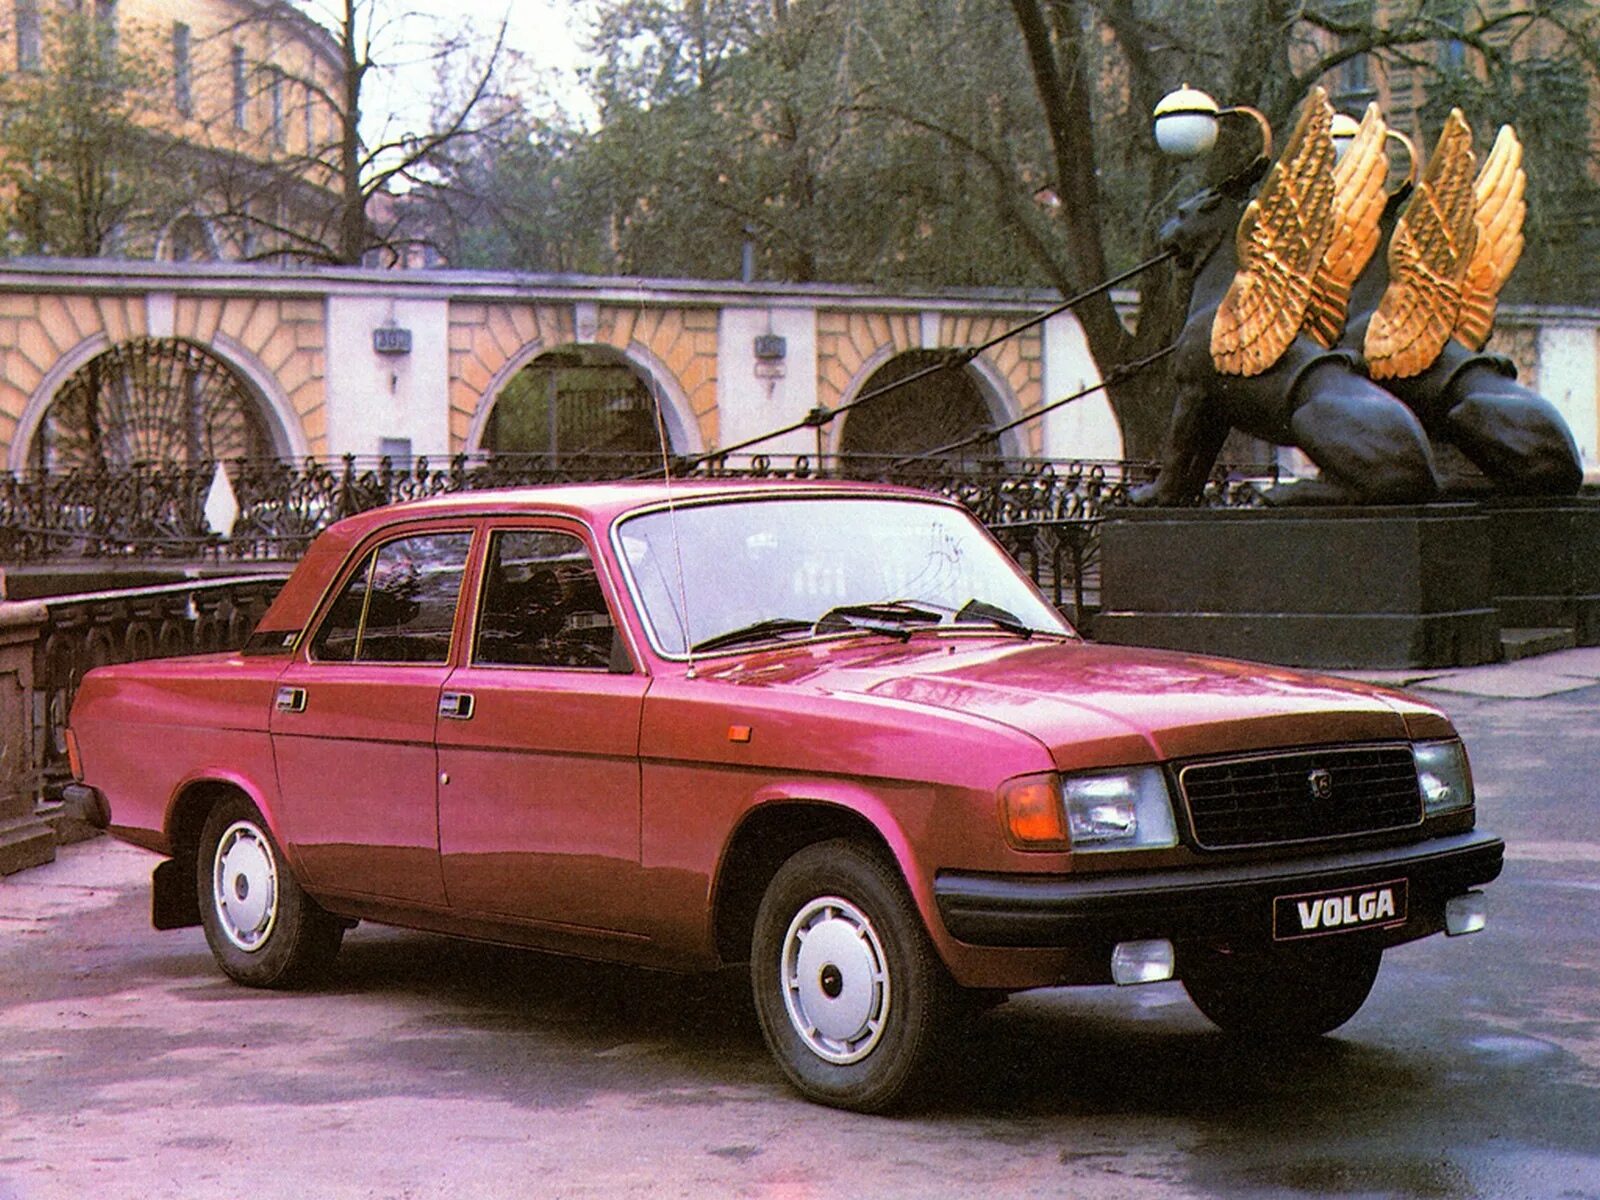 Волга ГАЗ 31029. ГАЗ-31029 автомобиль Волга (автомобиль). Автомобиль Волга 31029. Волга ГАЗ 31029 1992.